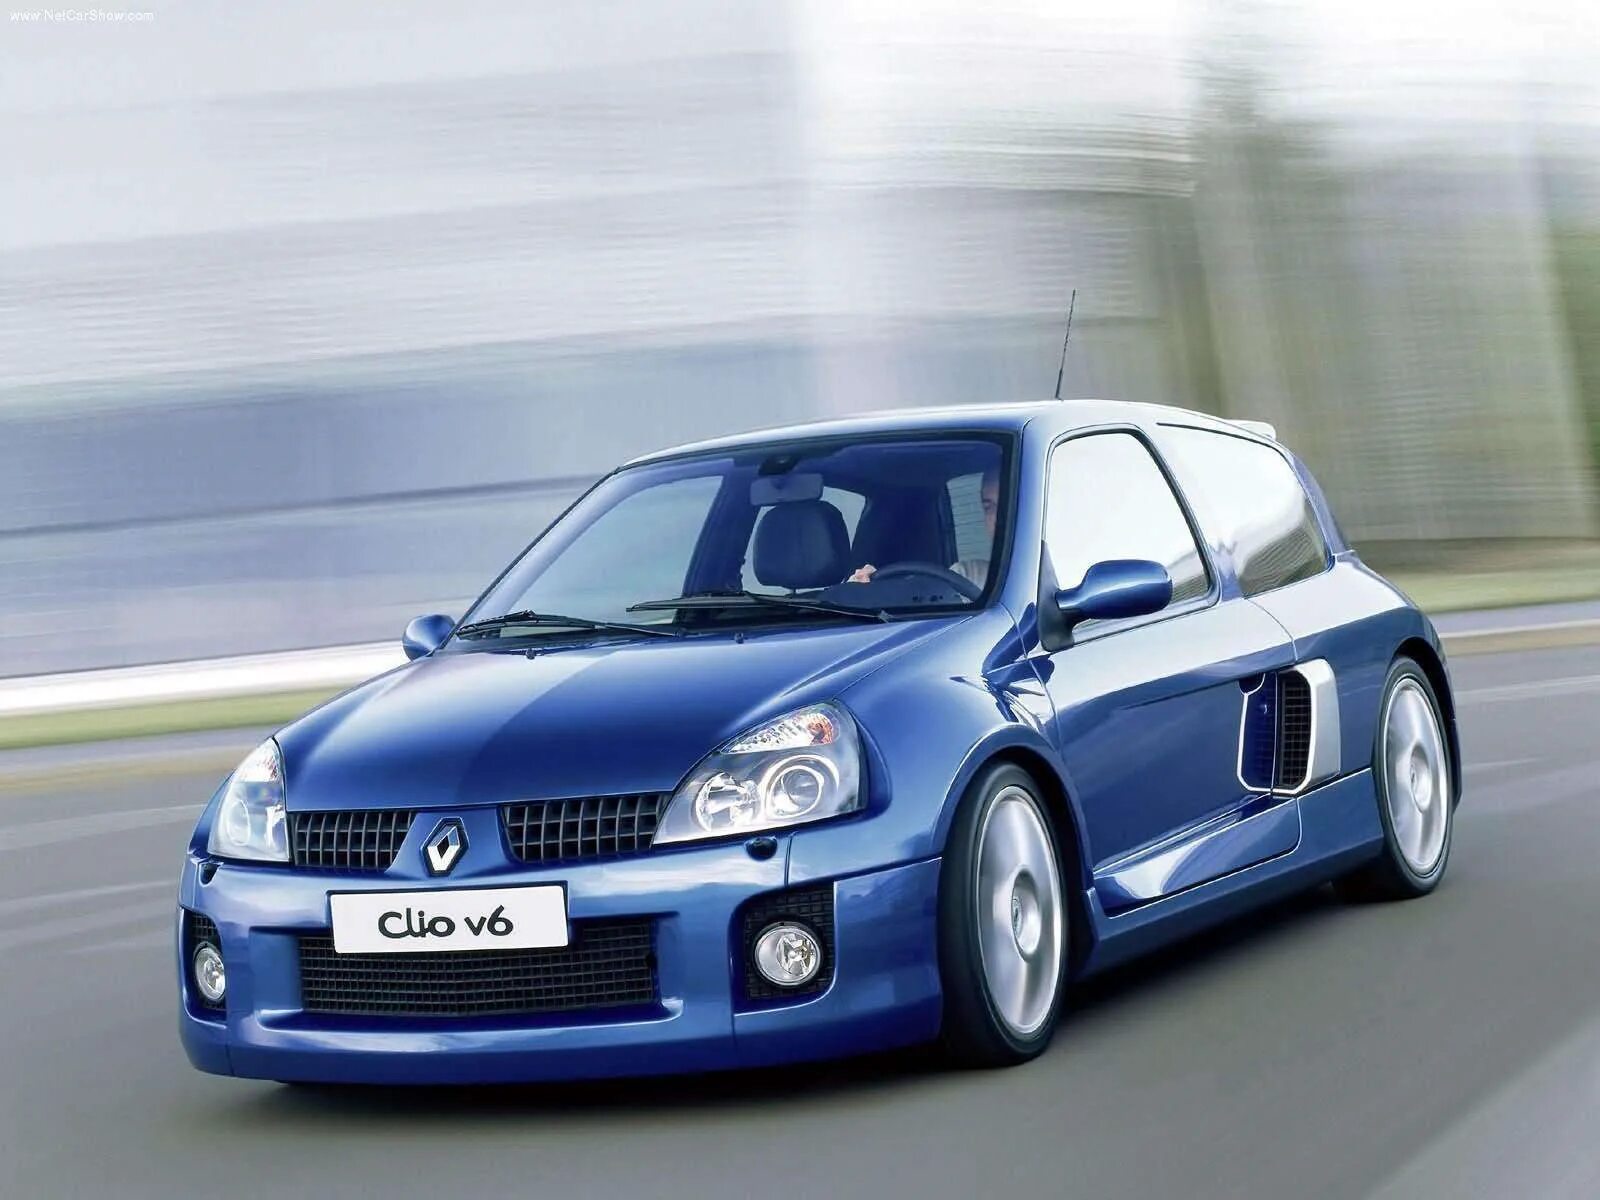 1.2 renault. Renault Clio v6 2003. Renault Clio v6. Рено Клио спорт v6. Renault Clio v6 Renault Sport.